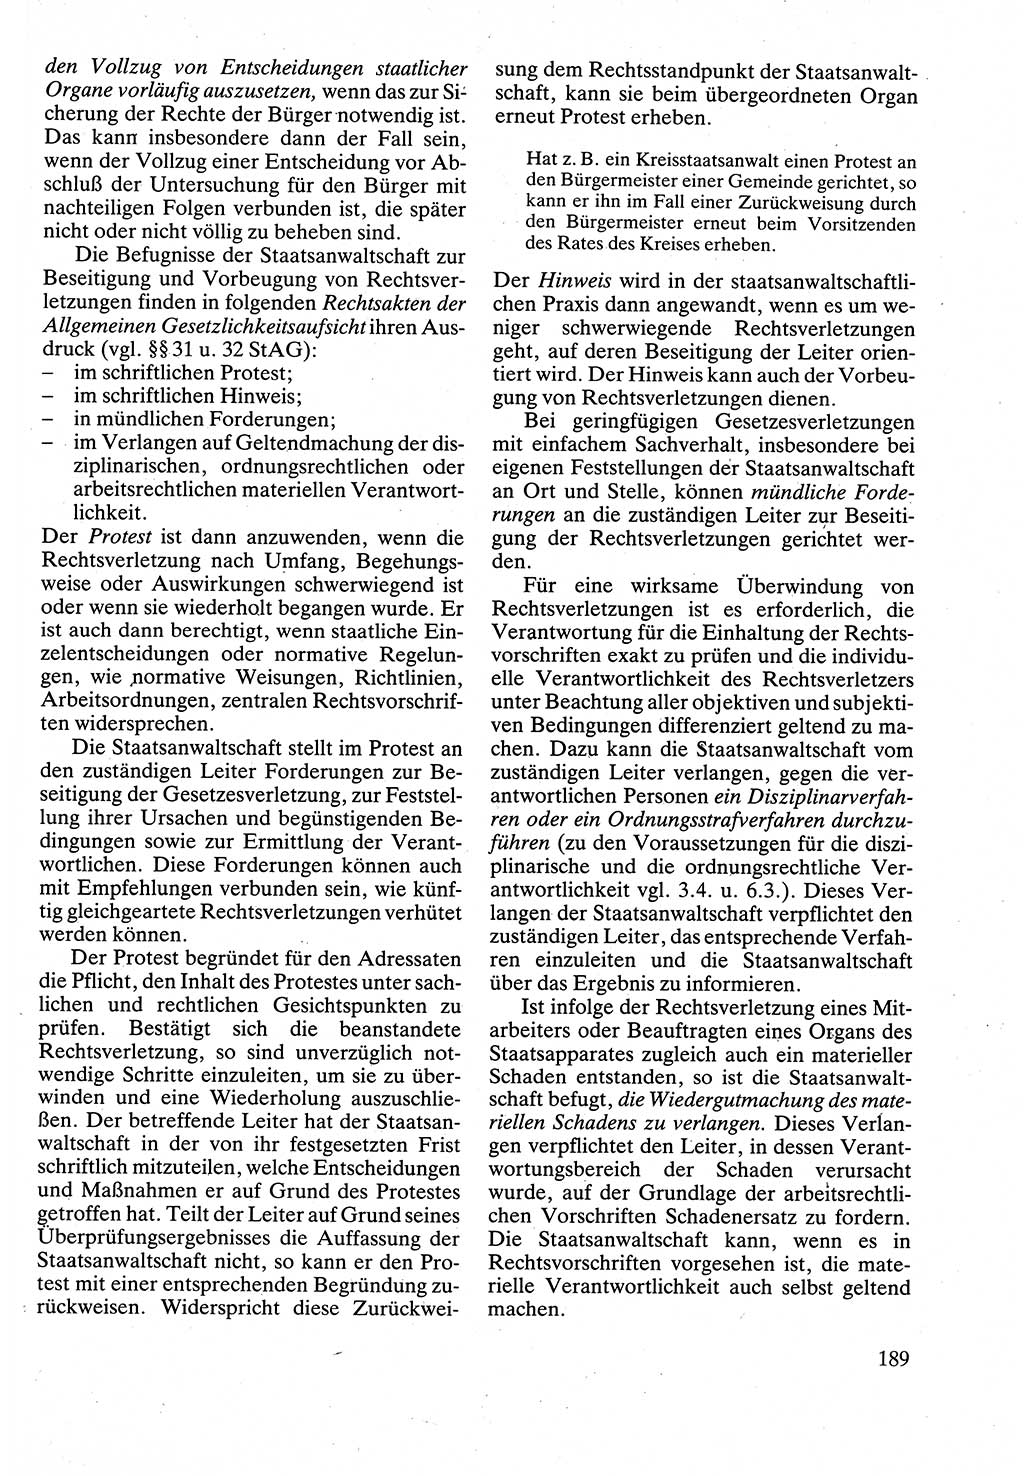 Verwaltungsrecht [Deutsche Demokratische Republik (DDR)], Lehrbuch 1988, Seite 189 (Verw.-R. DDR Lb. 1988, S. 189)